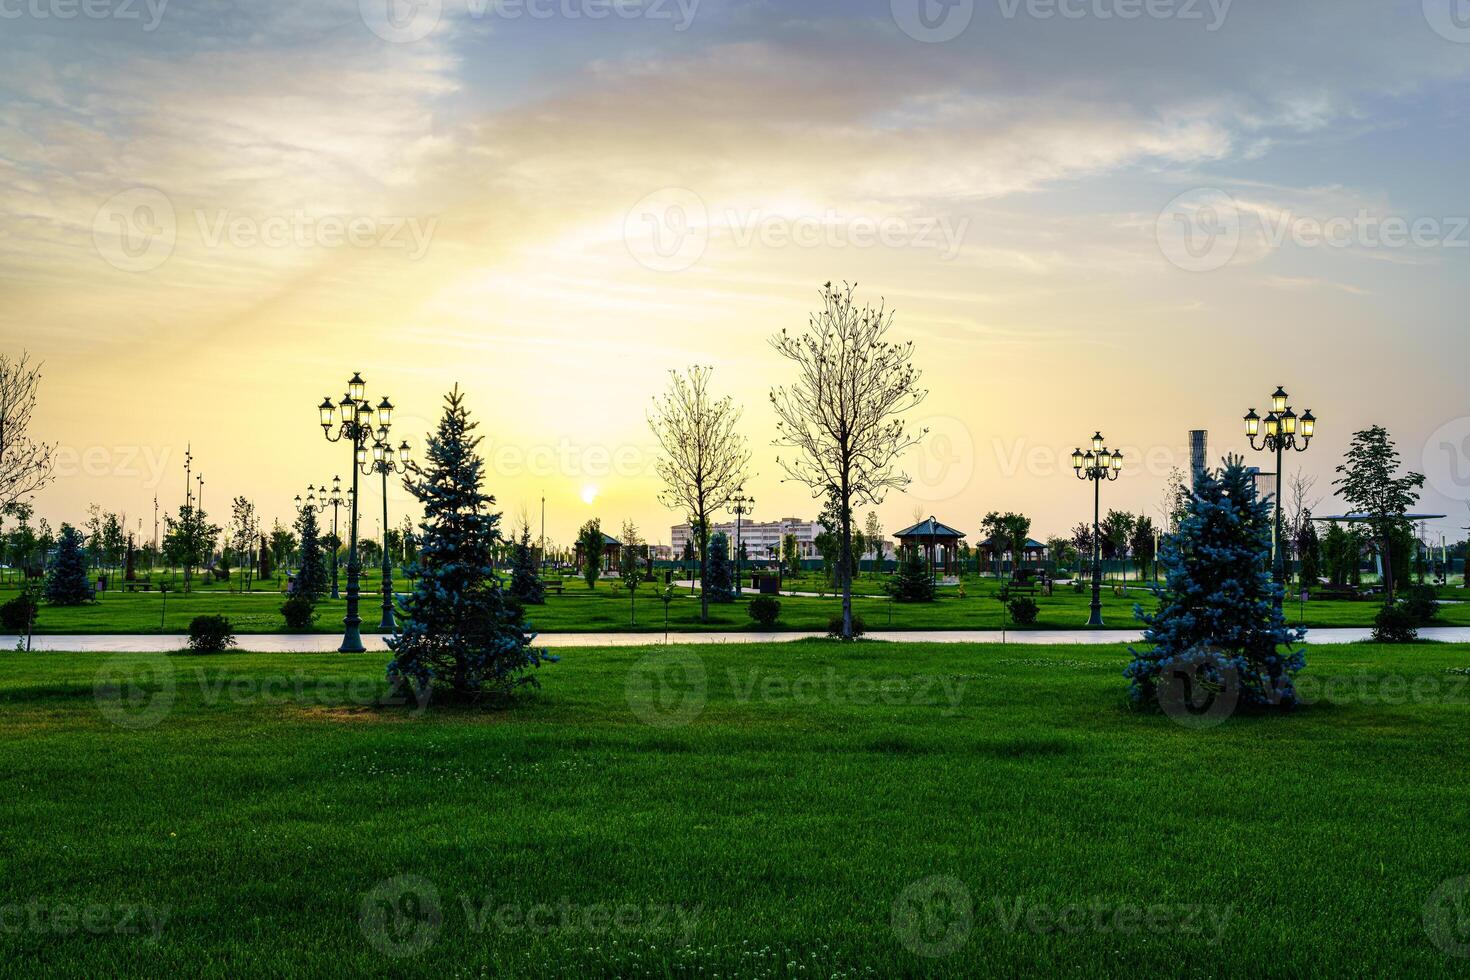 Stadt Park im früh Sommer- oder Frühling mit Laternen, jung Grün Rasen, Bäume und dramatisch wolkig Himmel auf ein Sonnenuntergang oder Sonnenaufgang. foto